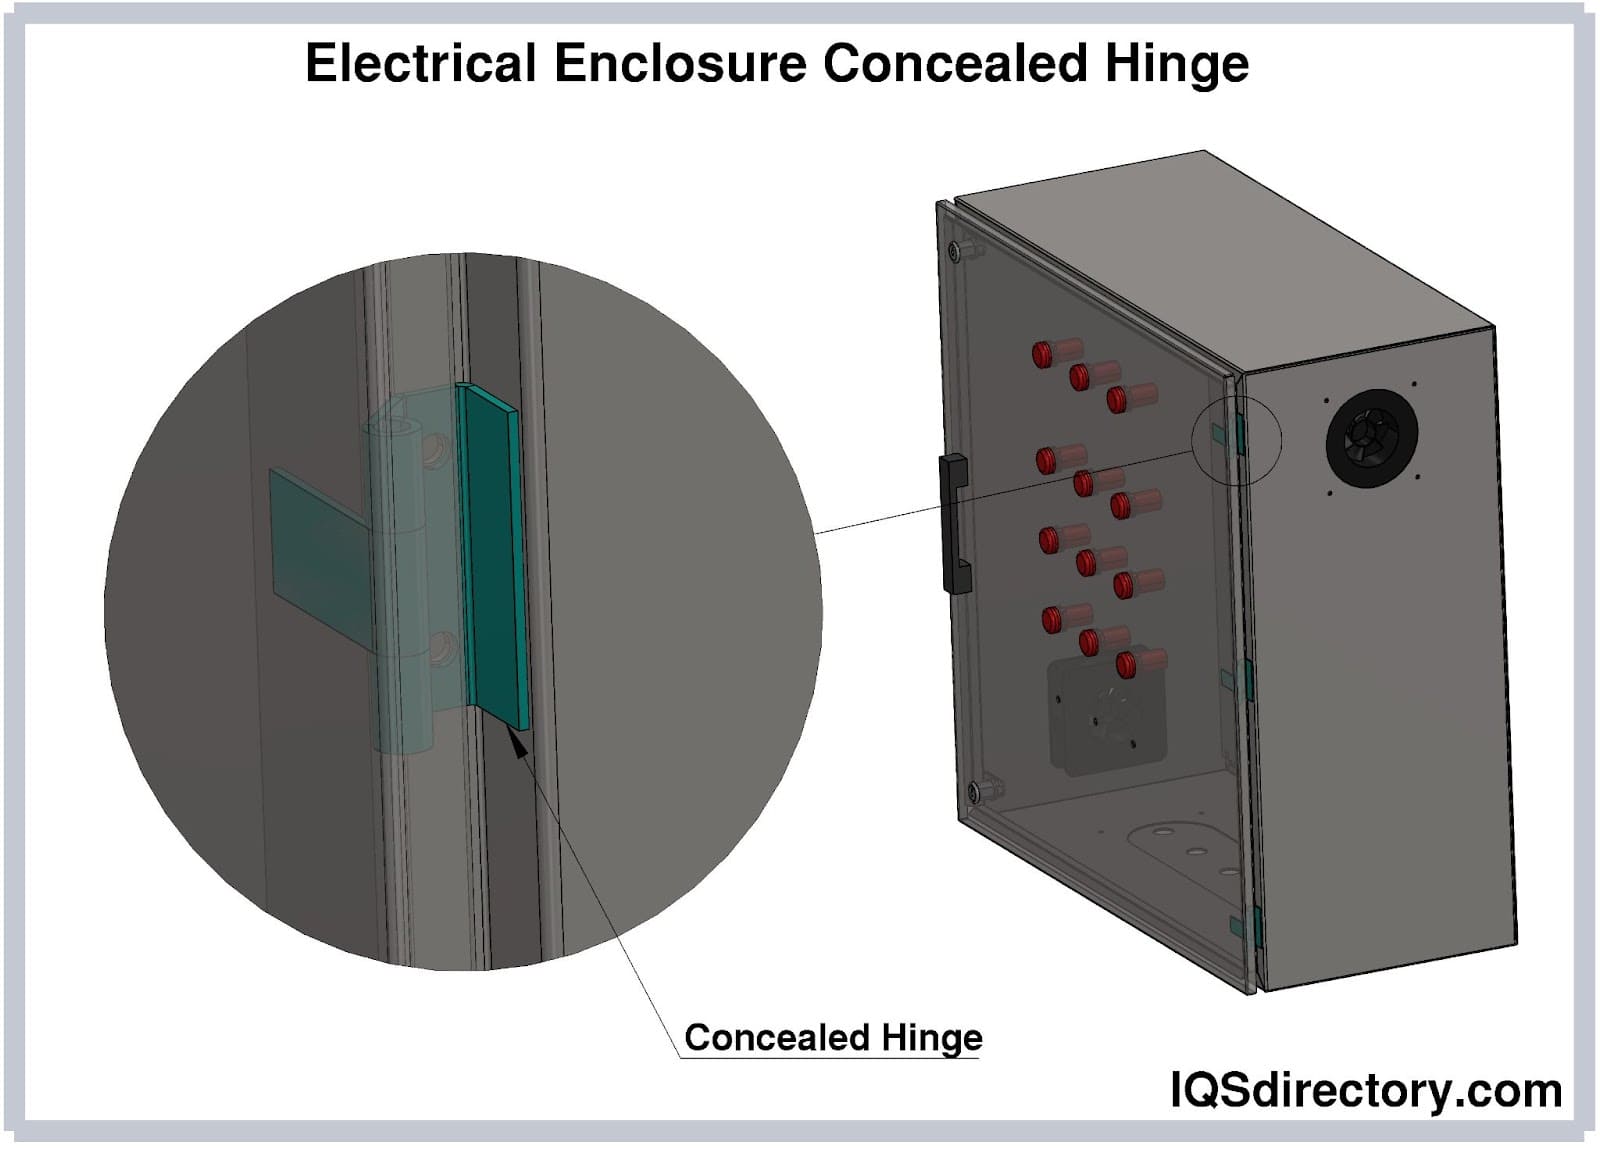 Electrical Enclosure Concealed Hinge